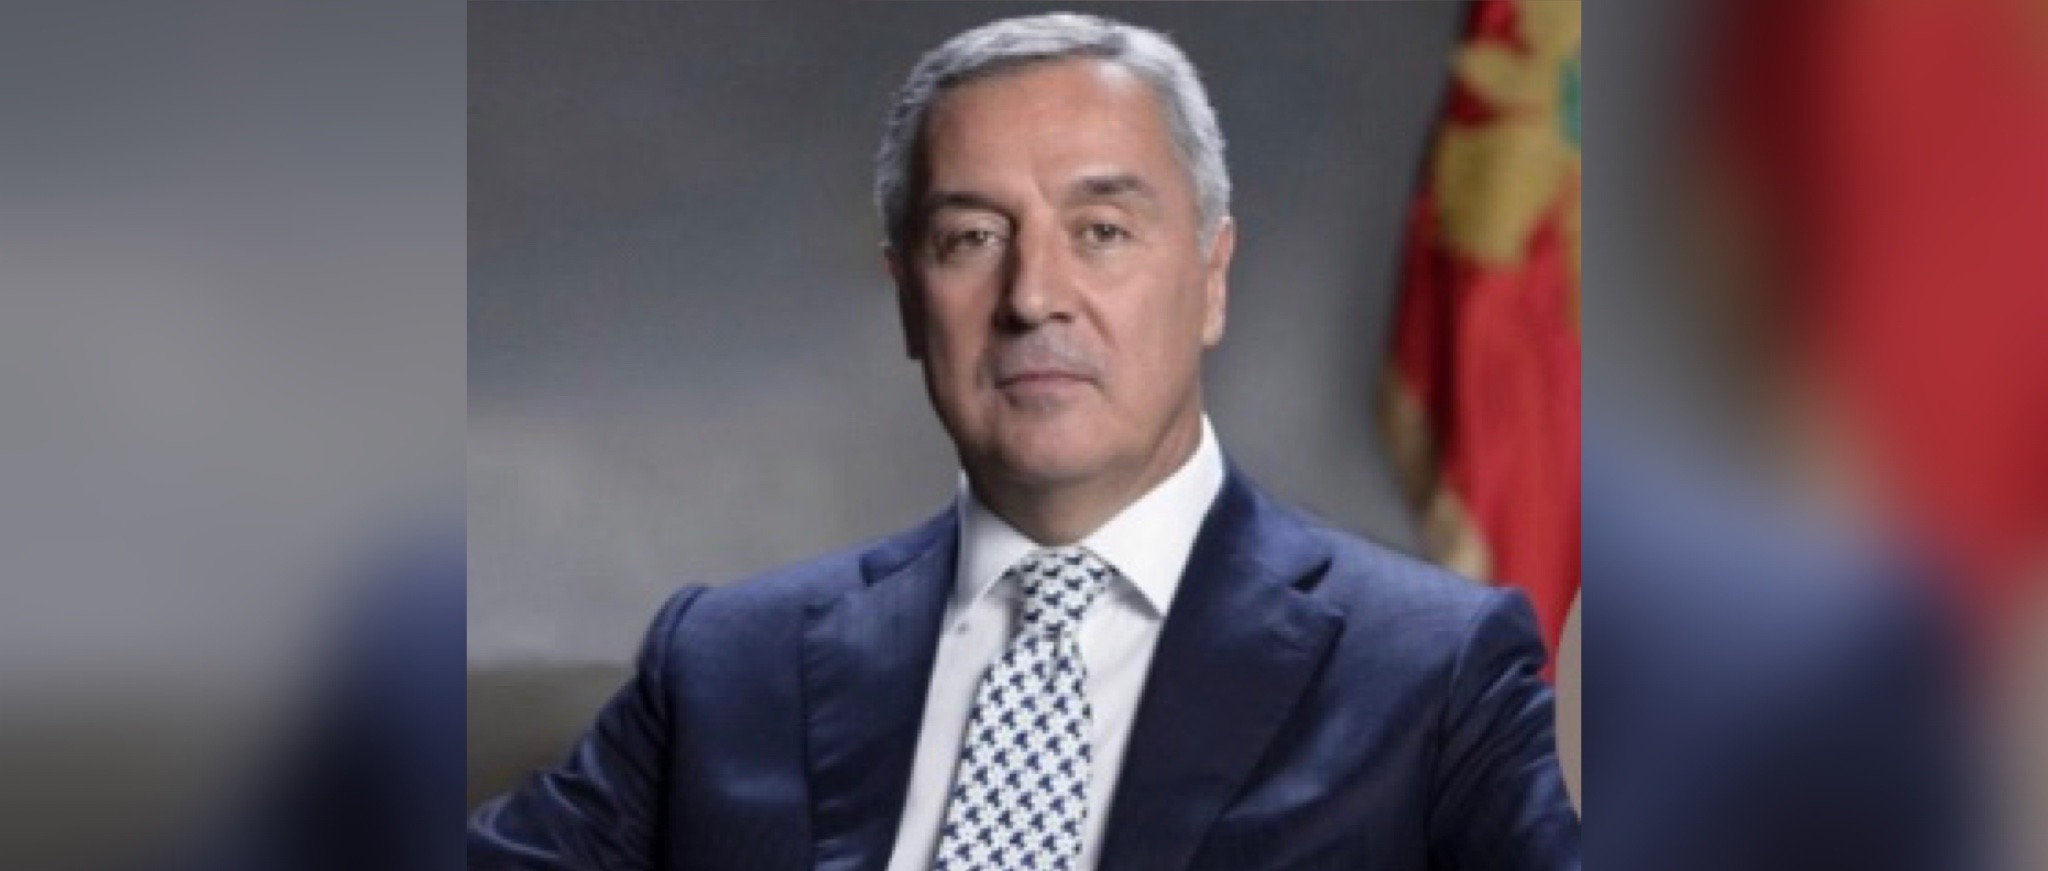 Milo Đukanović, kandidati, predsjednik crne gore